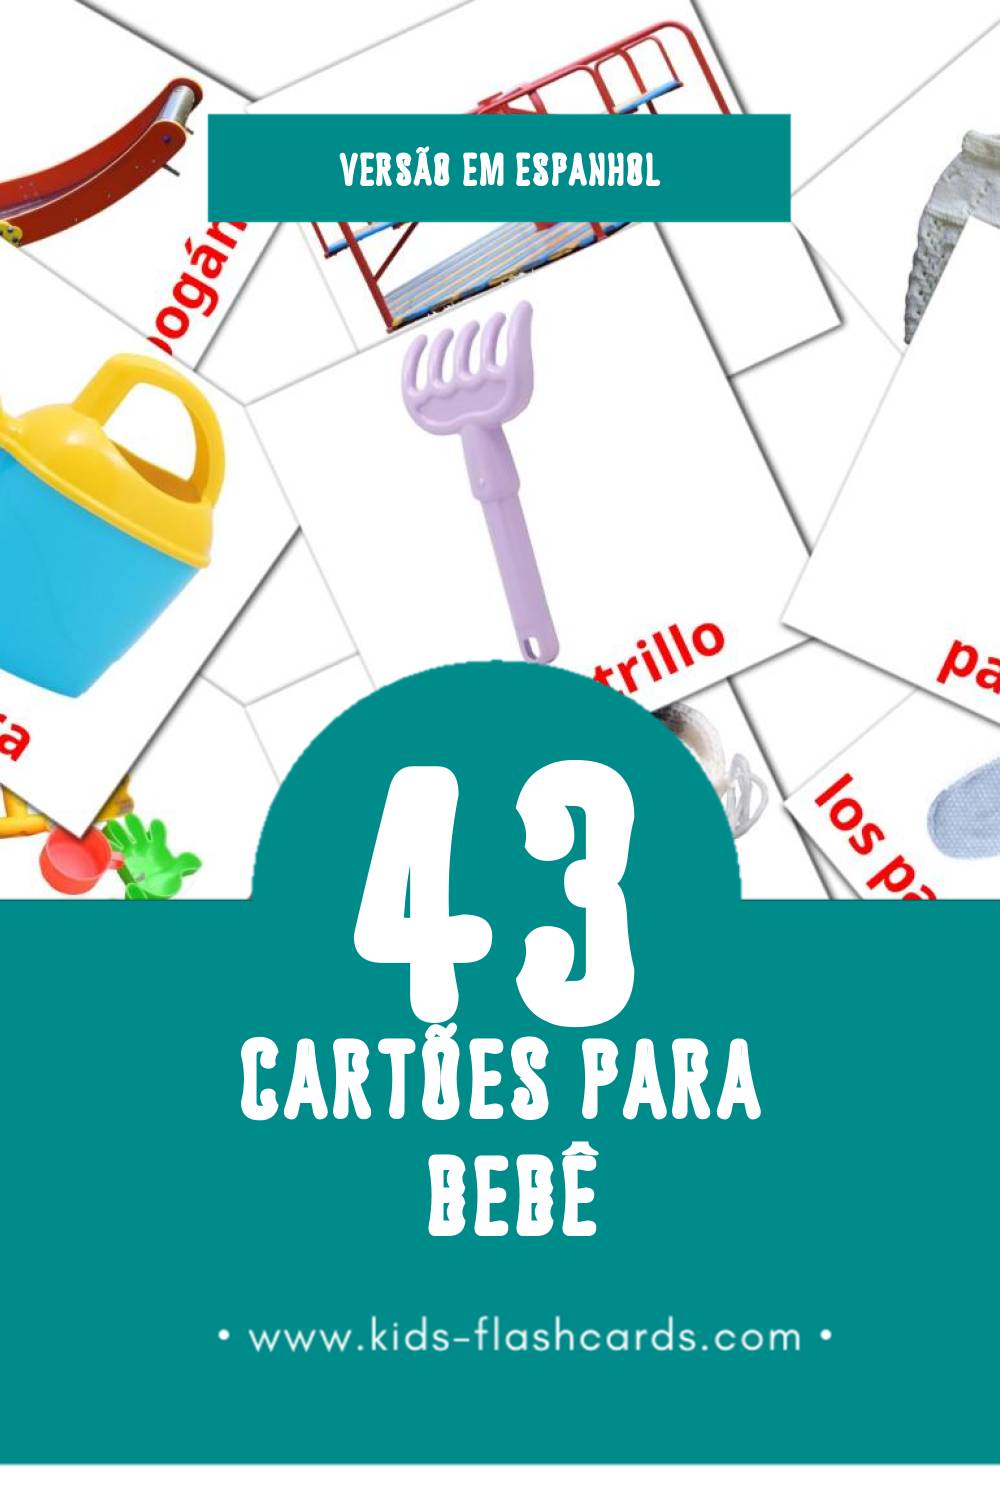 Flashcards de Bebé Visuais para Toddlers (45 cartões em Espanhol)